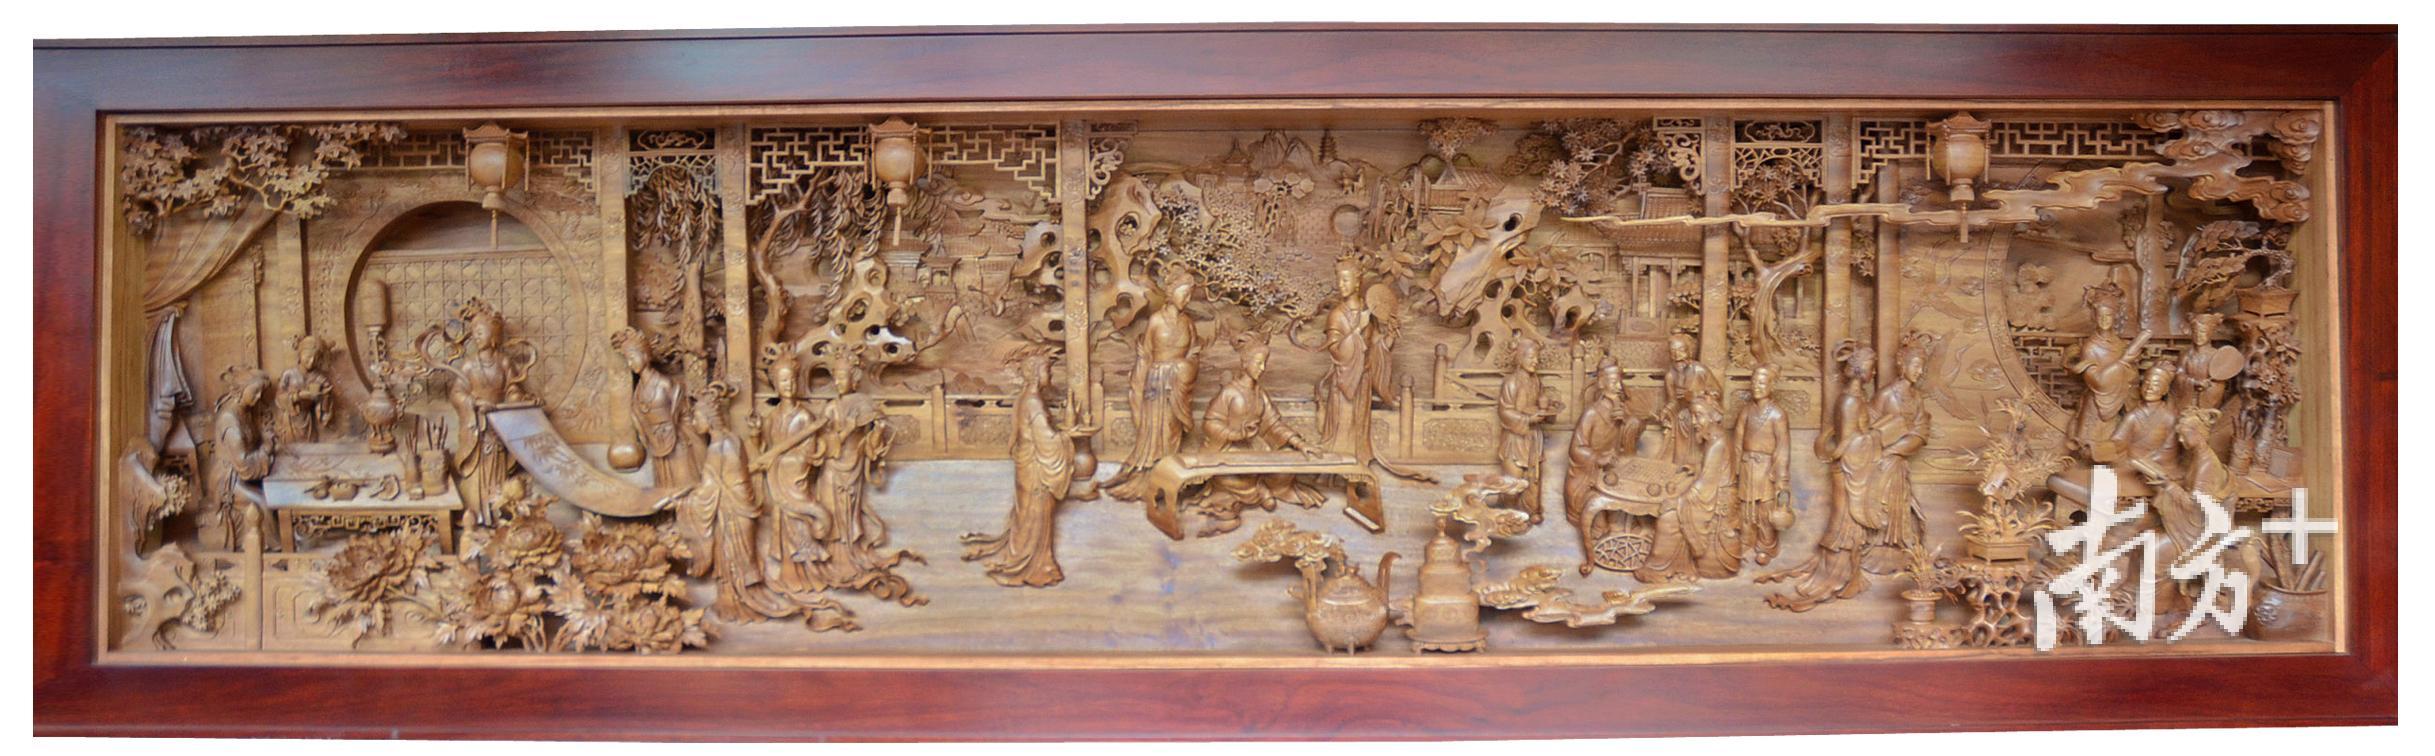 李中庆作品《琴棋书画》，将东阳木雕的浮雕、潮州木雕的镂空雕等诸种技法熔为一炉。